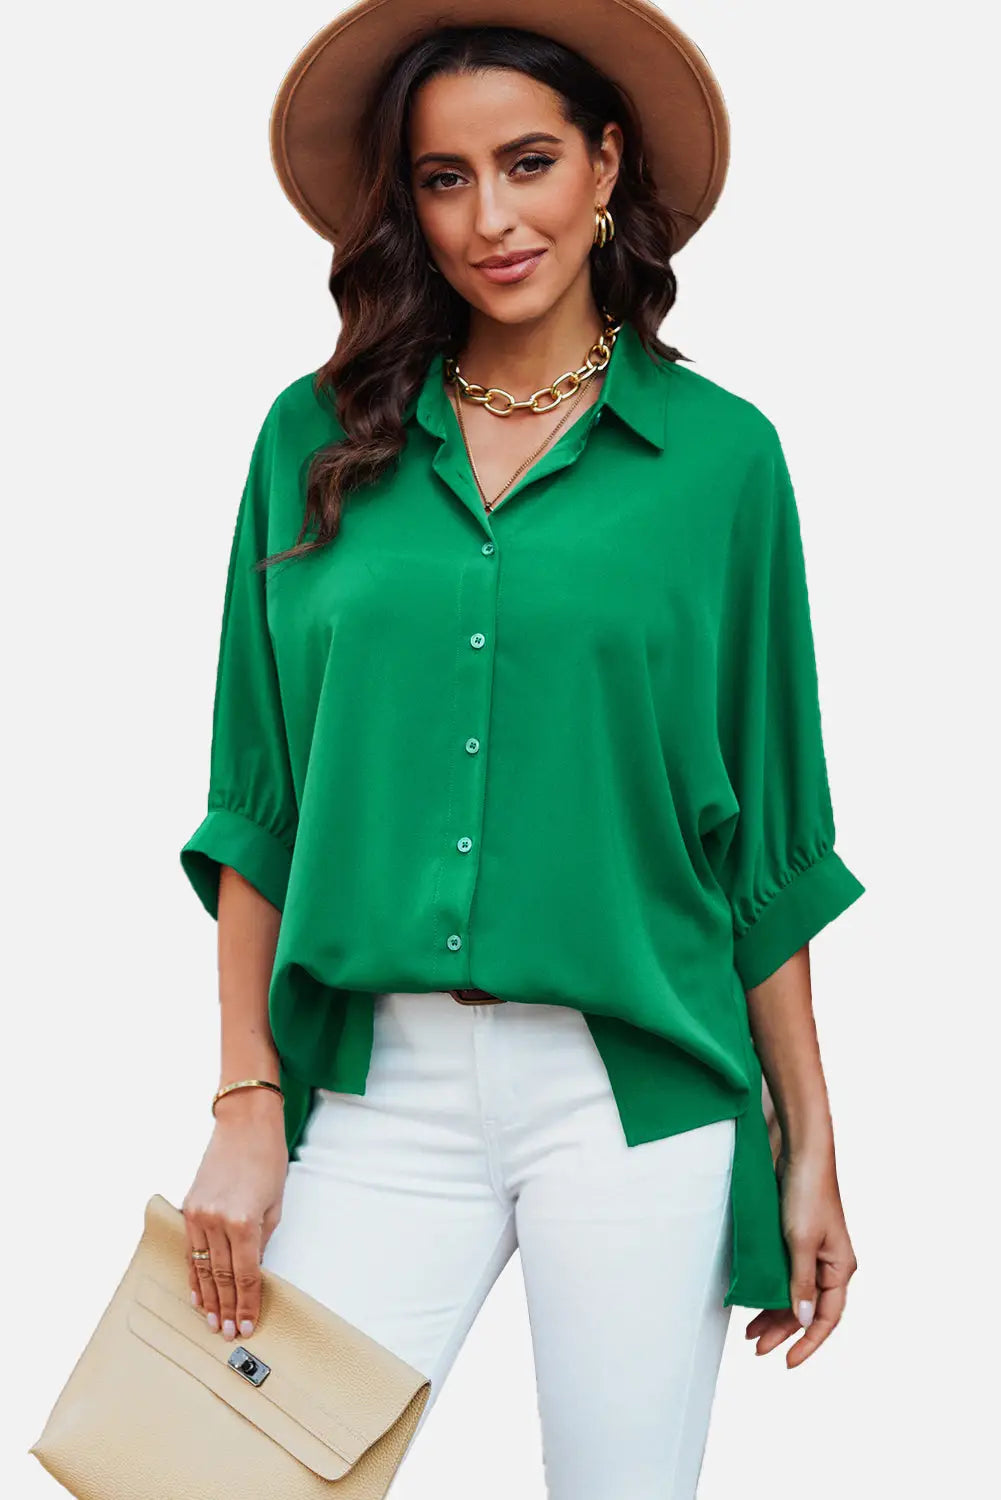 Green 3/4 puff sleeve oversize shirt - tops